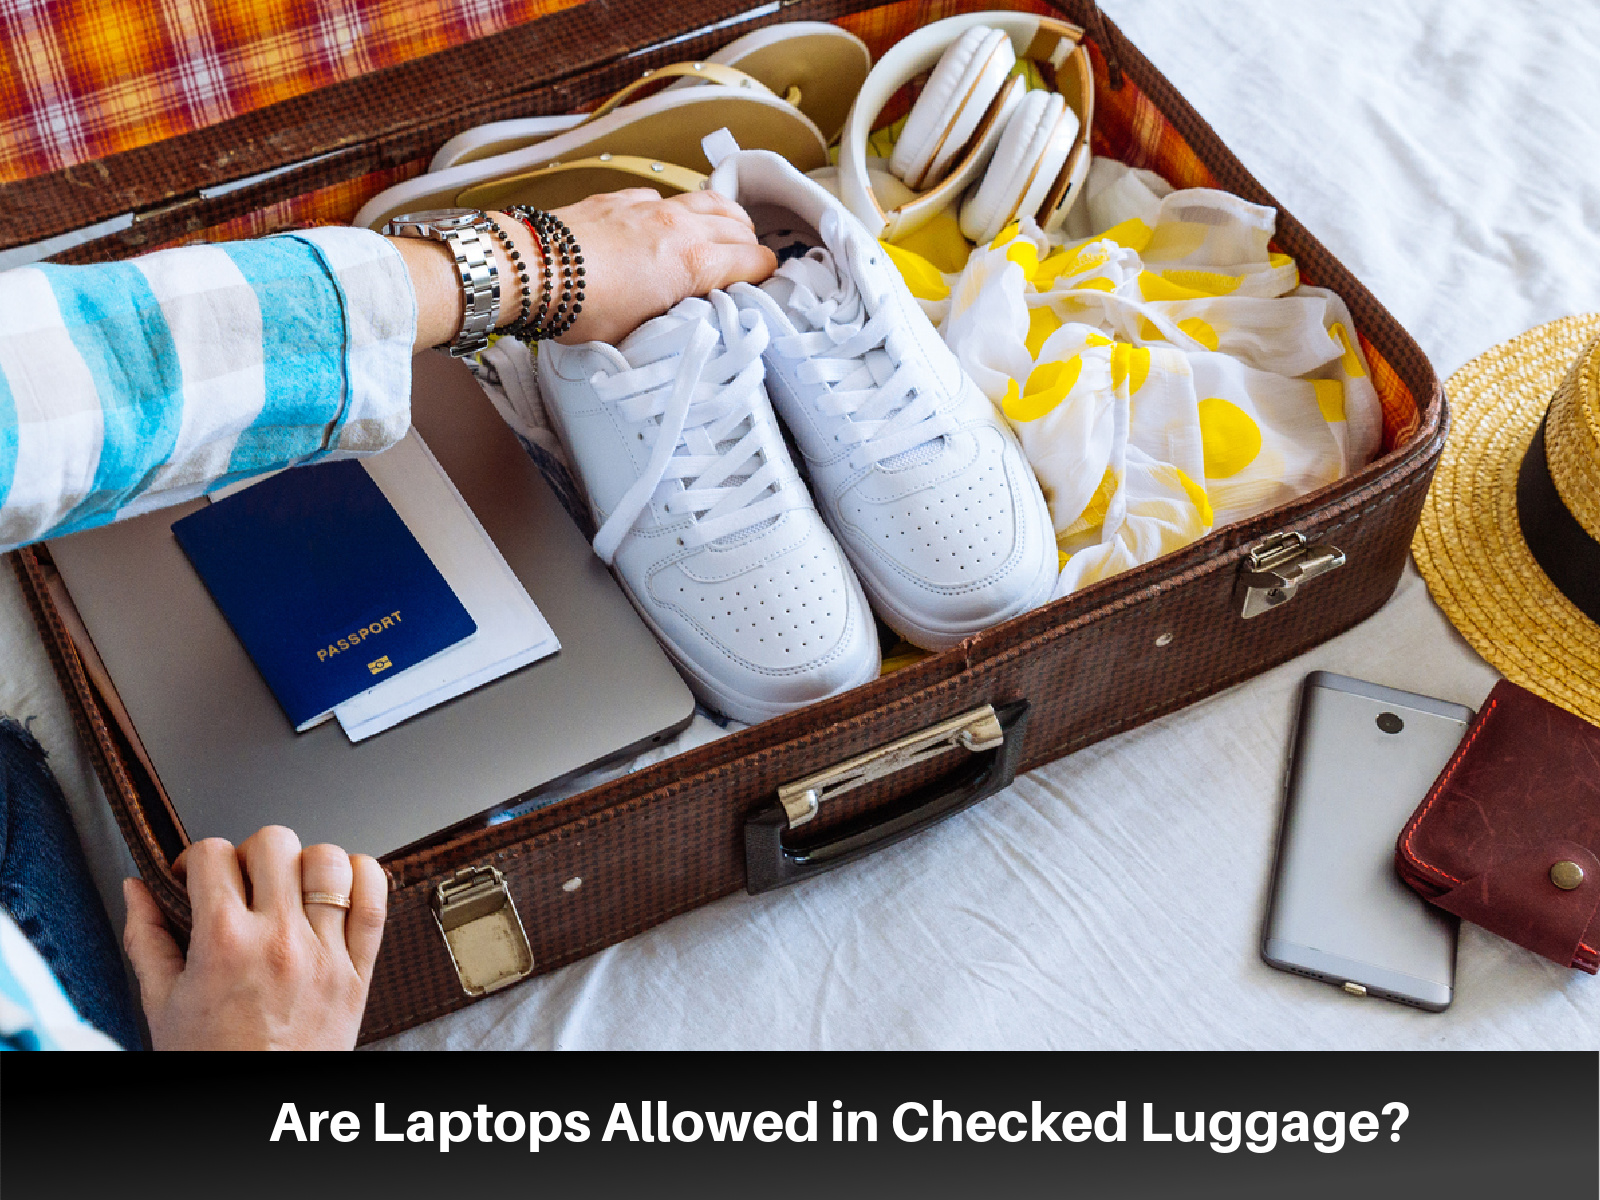 क्या आपके लैपटॉप को चेक्ड सामान में रखना सुरक्षित है?